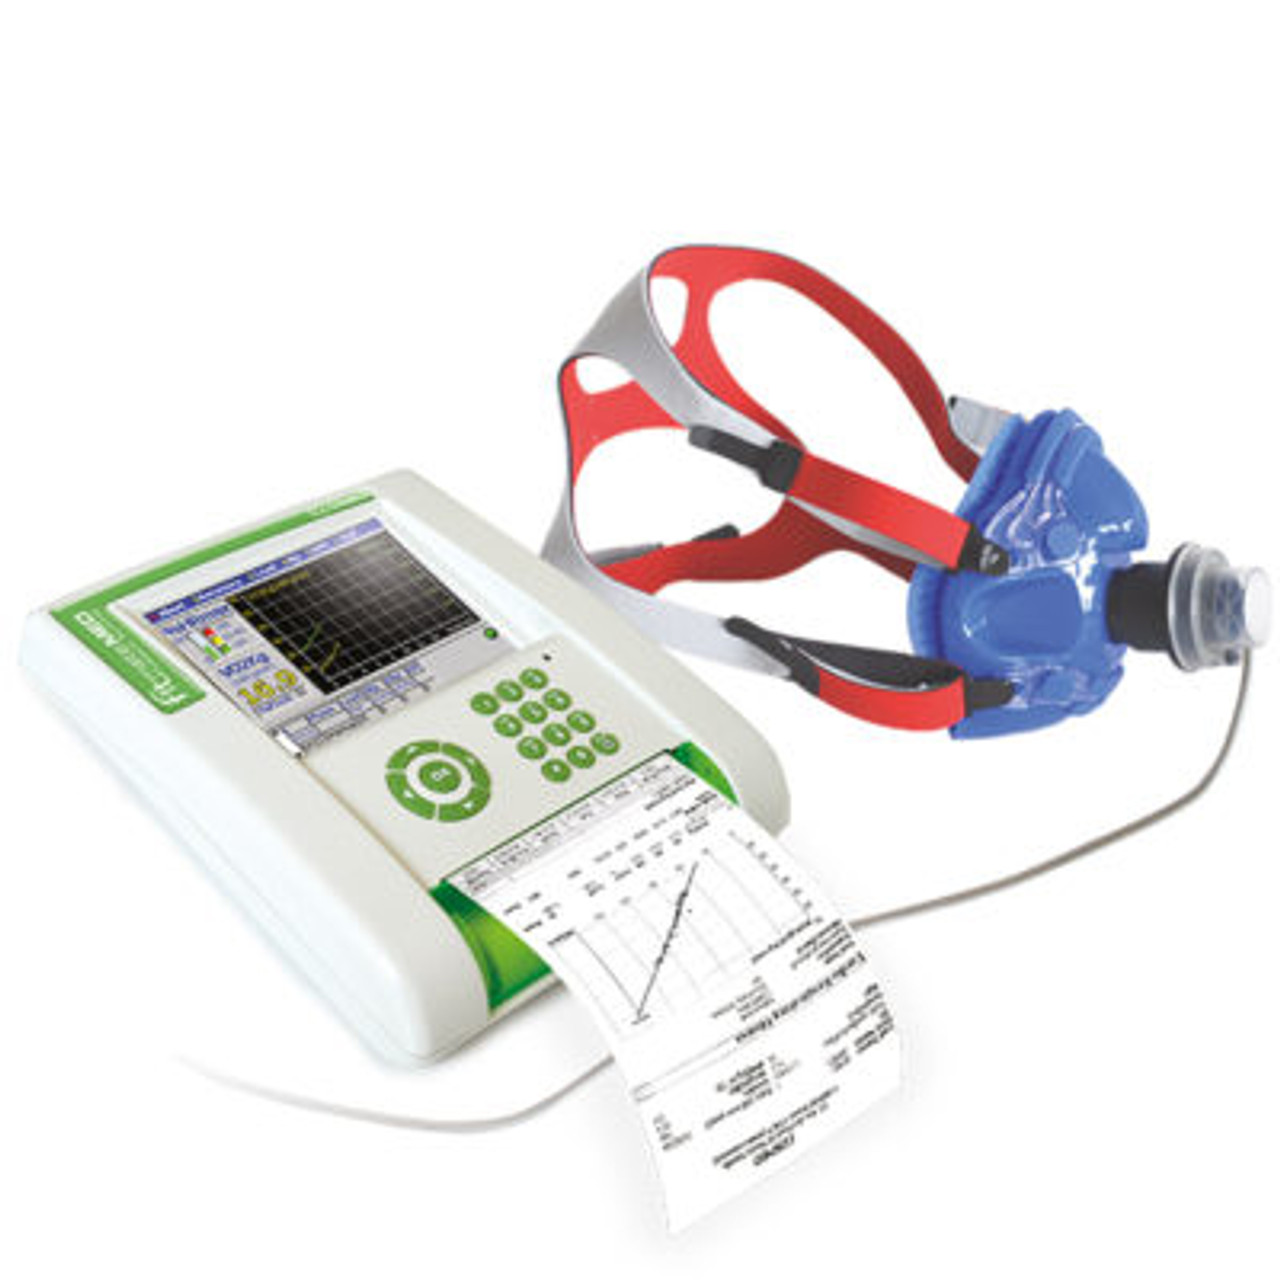 Cosmed  Fitmate MED - Desktop Cardiopulmonary Assessment Equipment